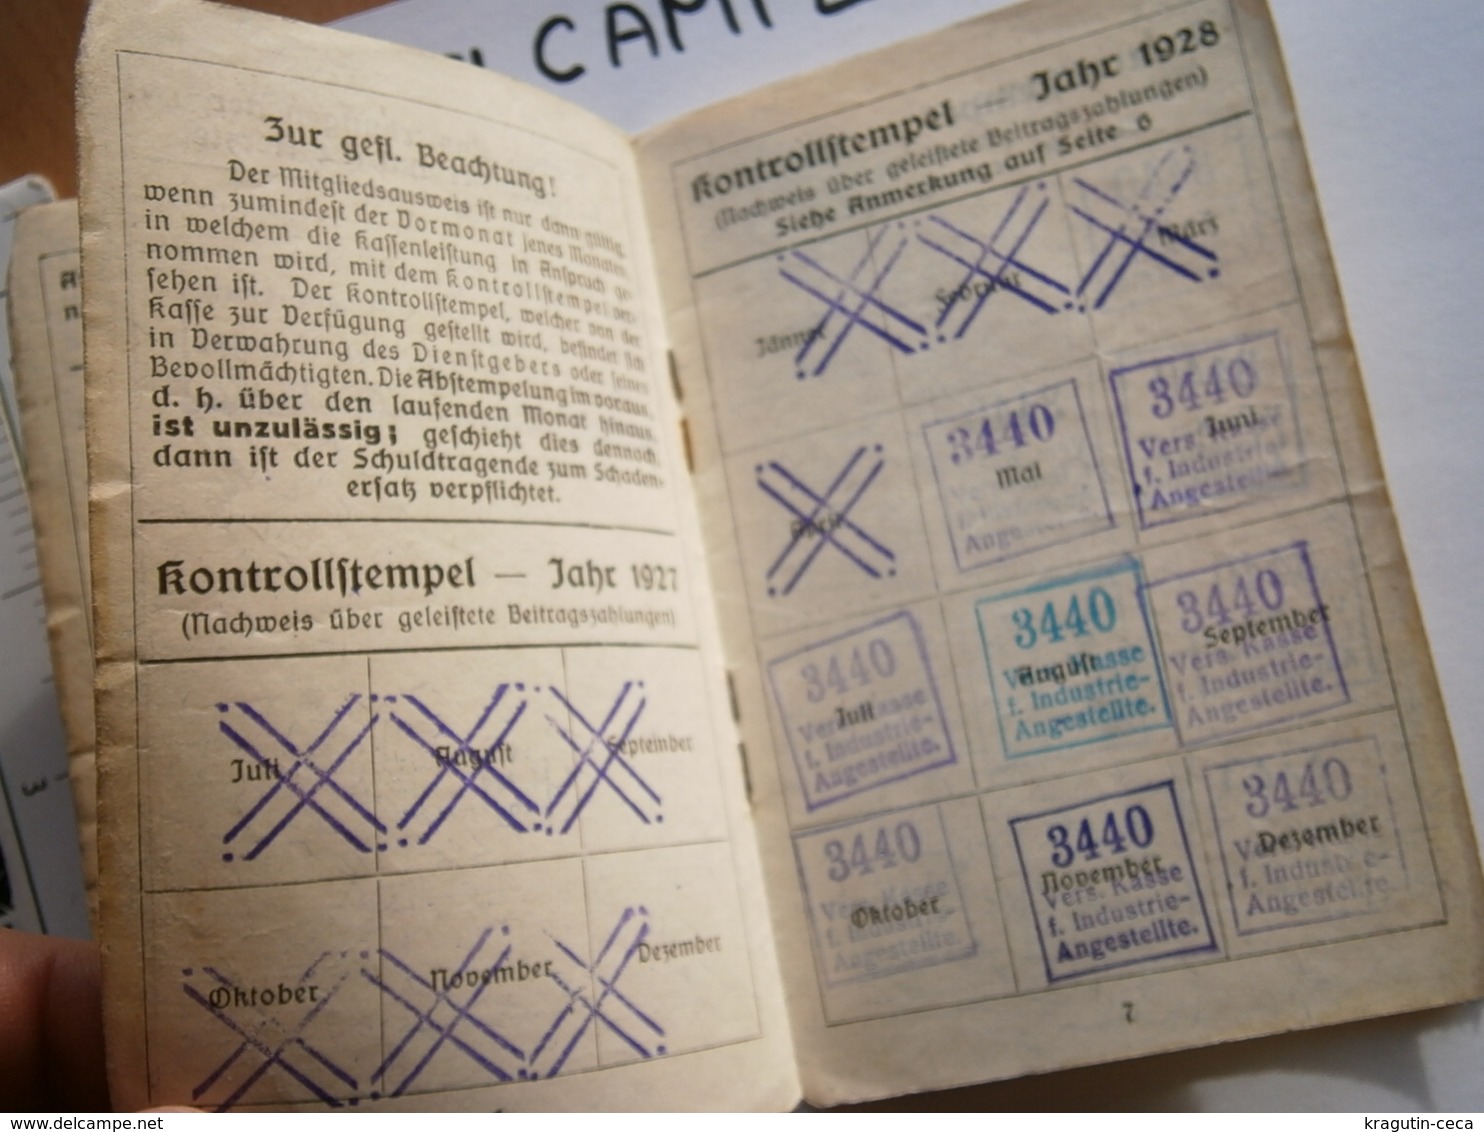 1930 WIEN OSTERREICH VIENNA AUSTRIA Mitgliedsausweis MEMBER CARD AUSWEIS EMPLOYEES DOCUMENT INSURANCE VERSICHERUNGSKARTE - Lidmaatschapskaarten